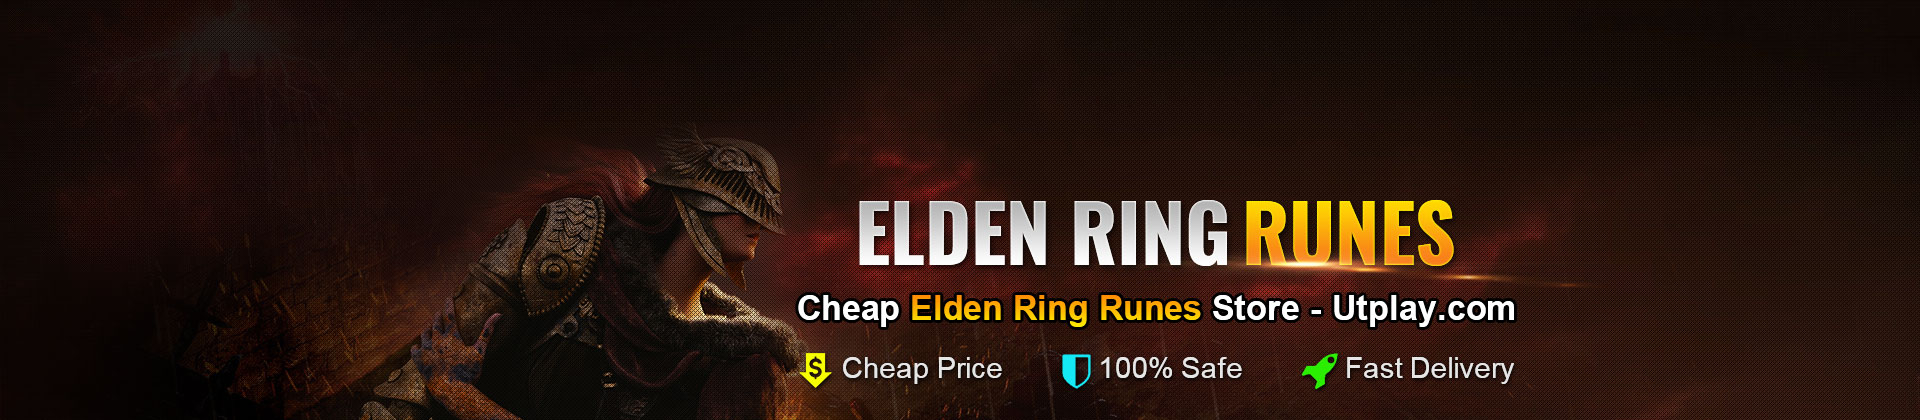 Buy Elden Ring Runes